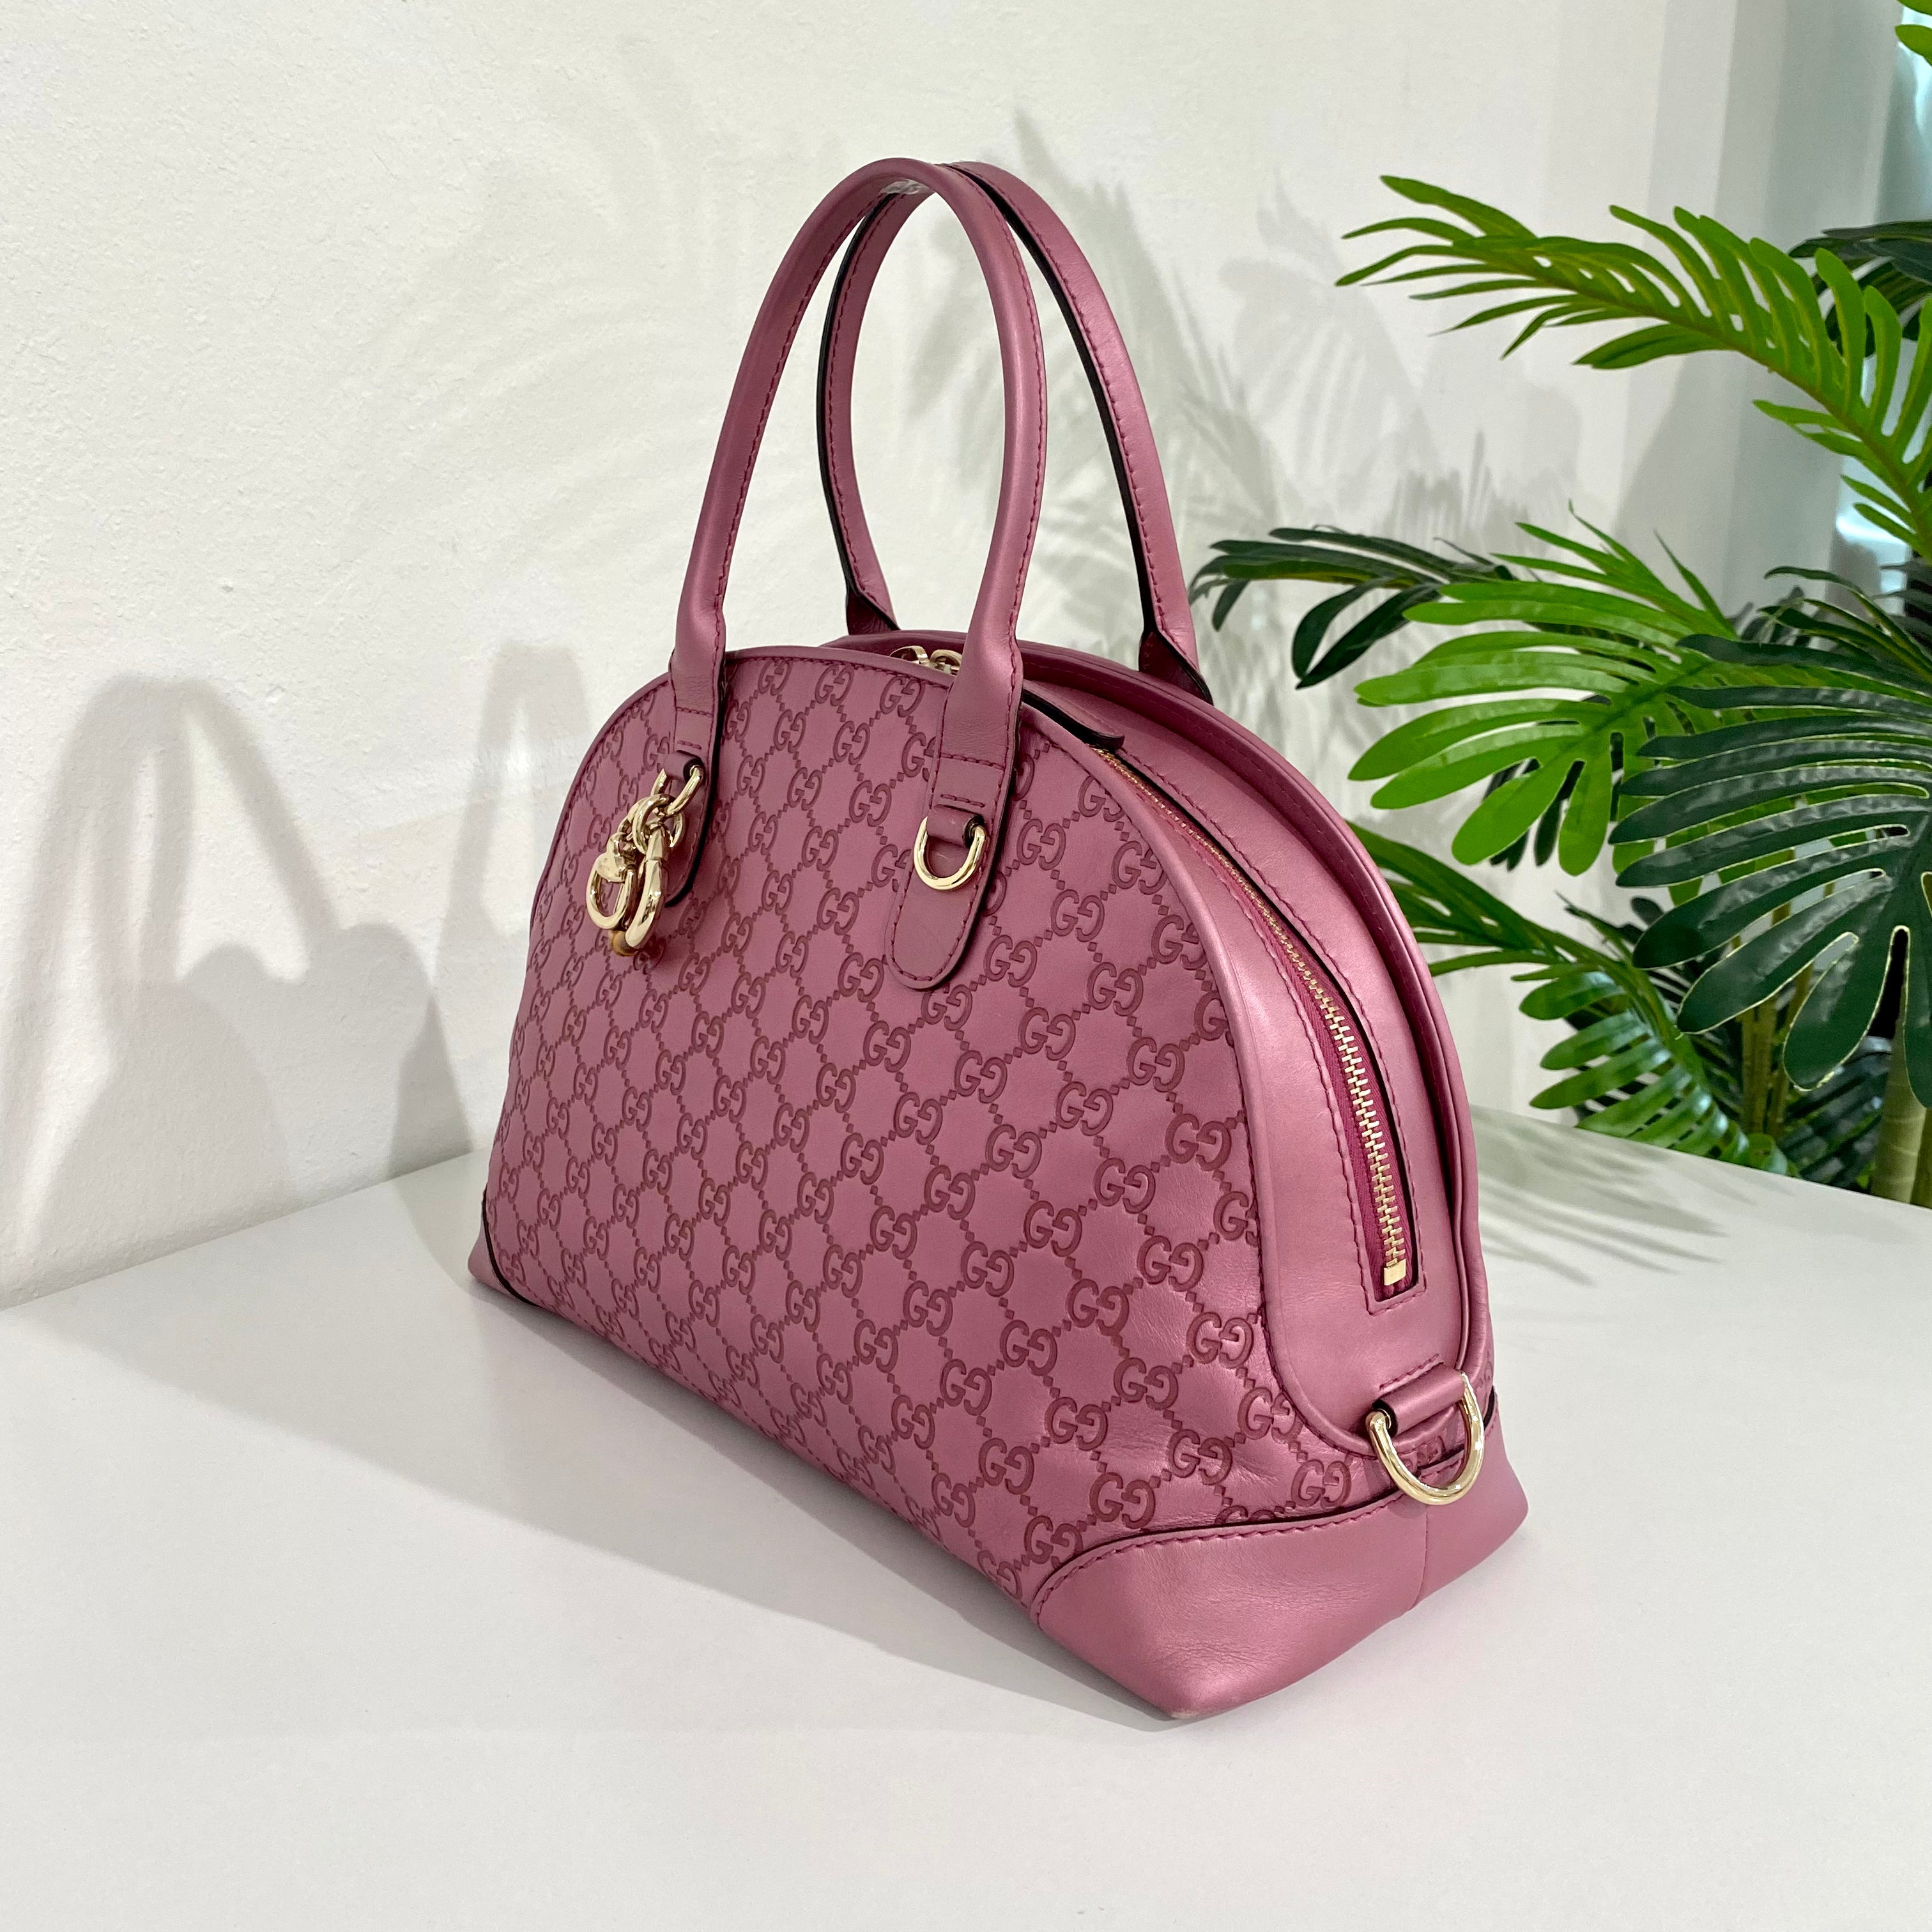 Gucci Metallic Pink Bag